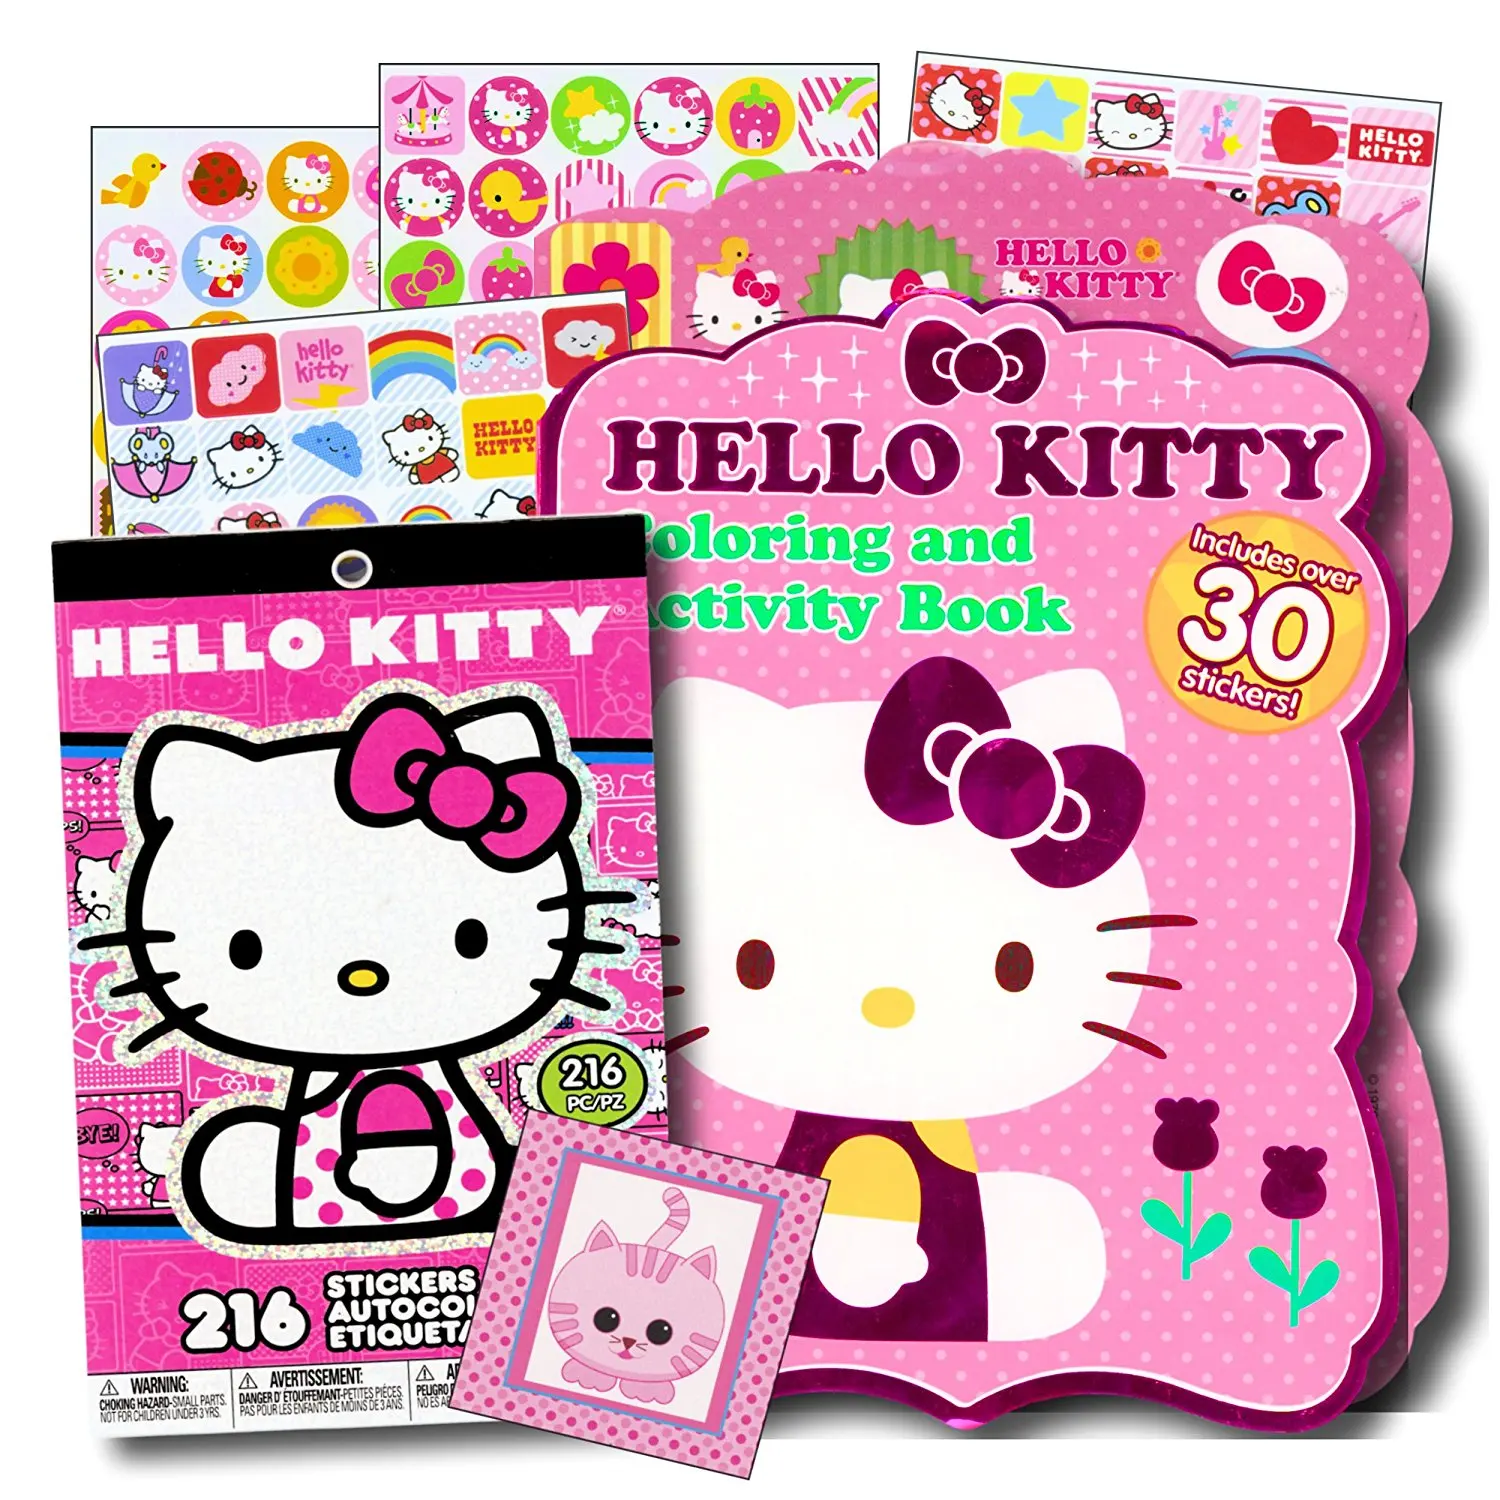 Hello Kitty Stickers Printable prntbl concejomunicipaldechinu gov co